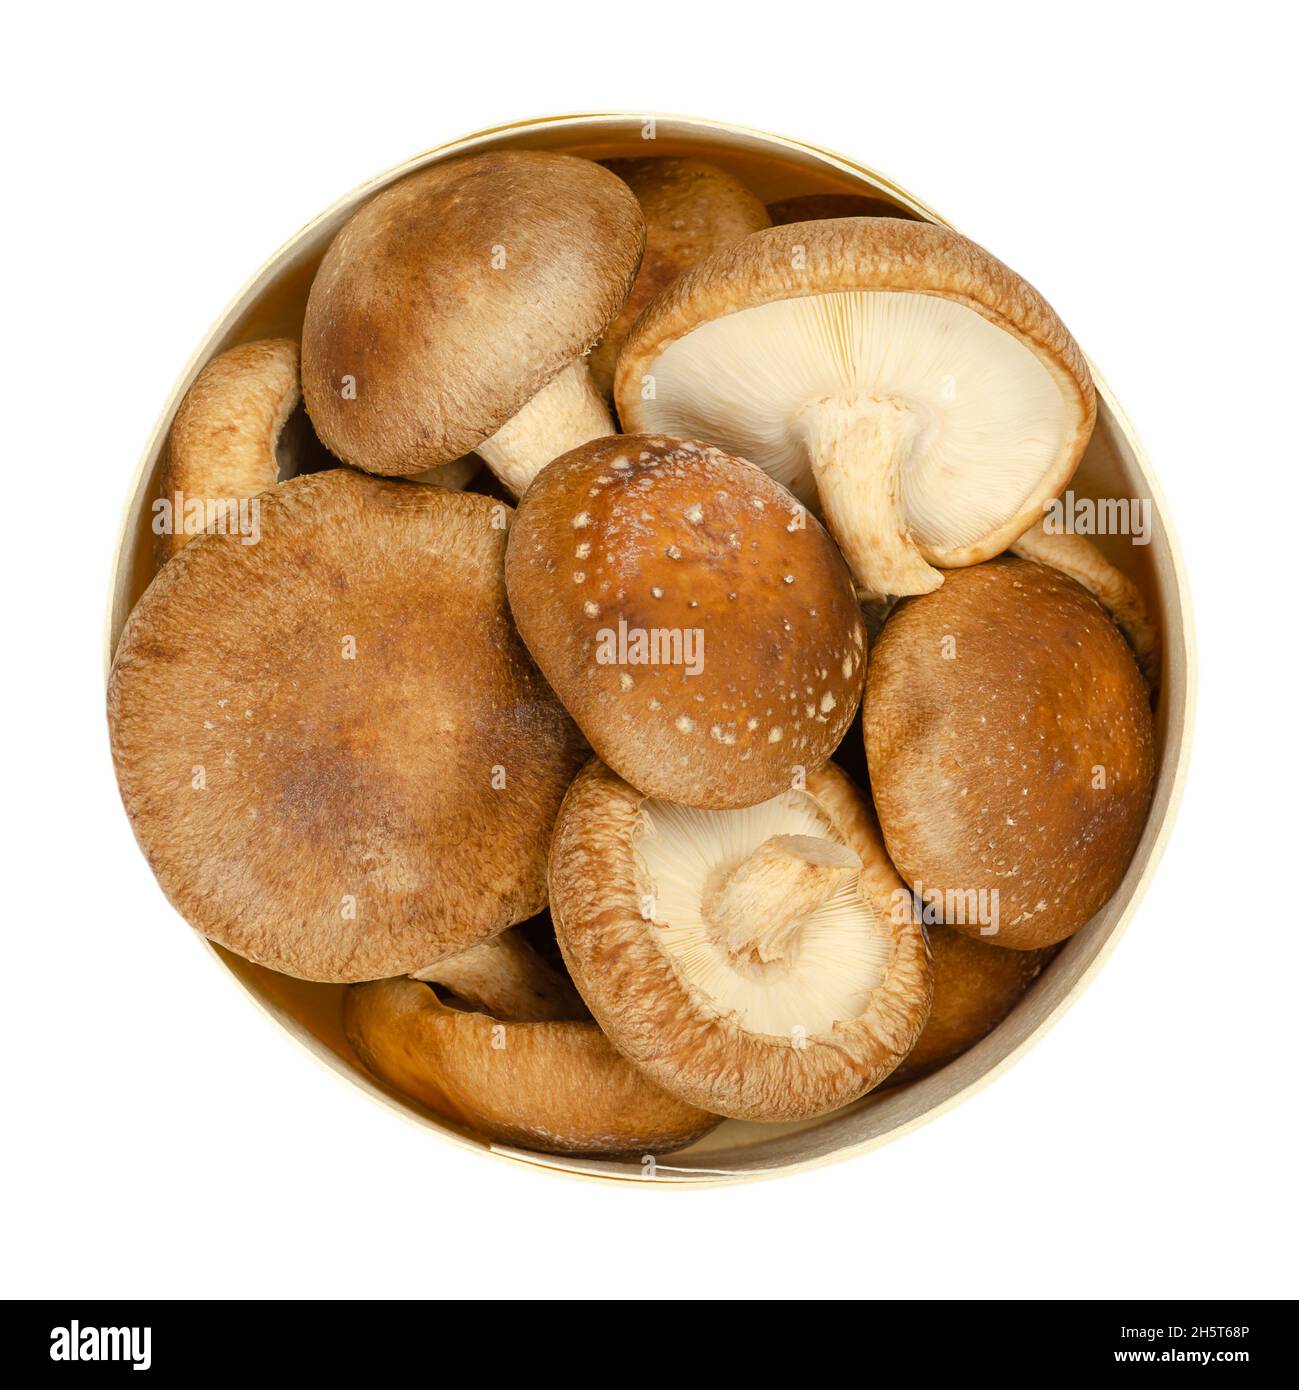 Frische ganze Shiitake-Pilze, in einer runden Balsaholzkiste. Lentinula edodes, essbare Pilze, aus Ostasien, auch in der traditionellen Medizin verwendet. Stockfoto